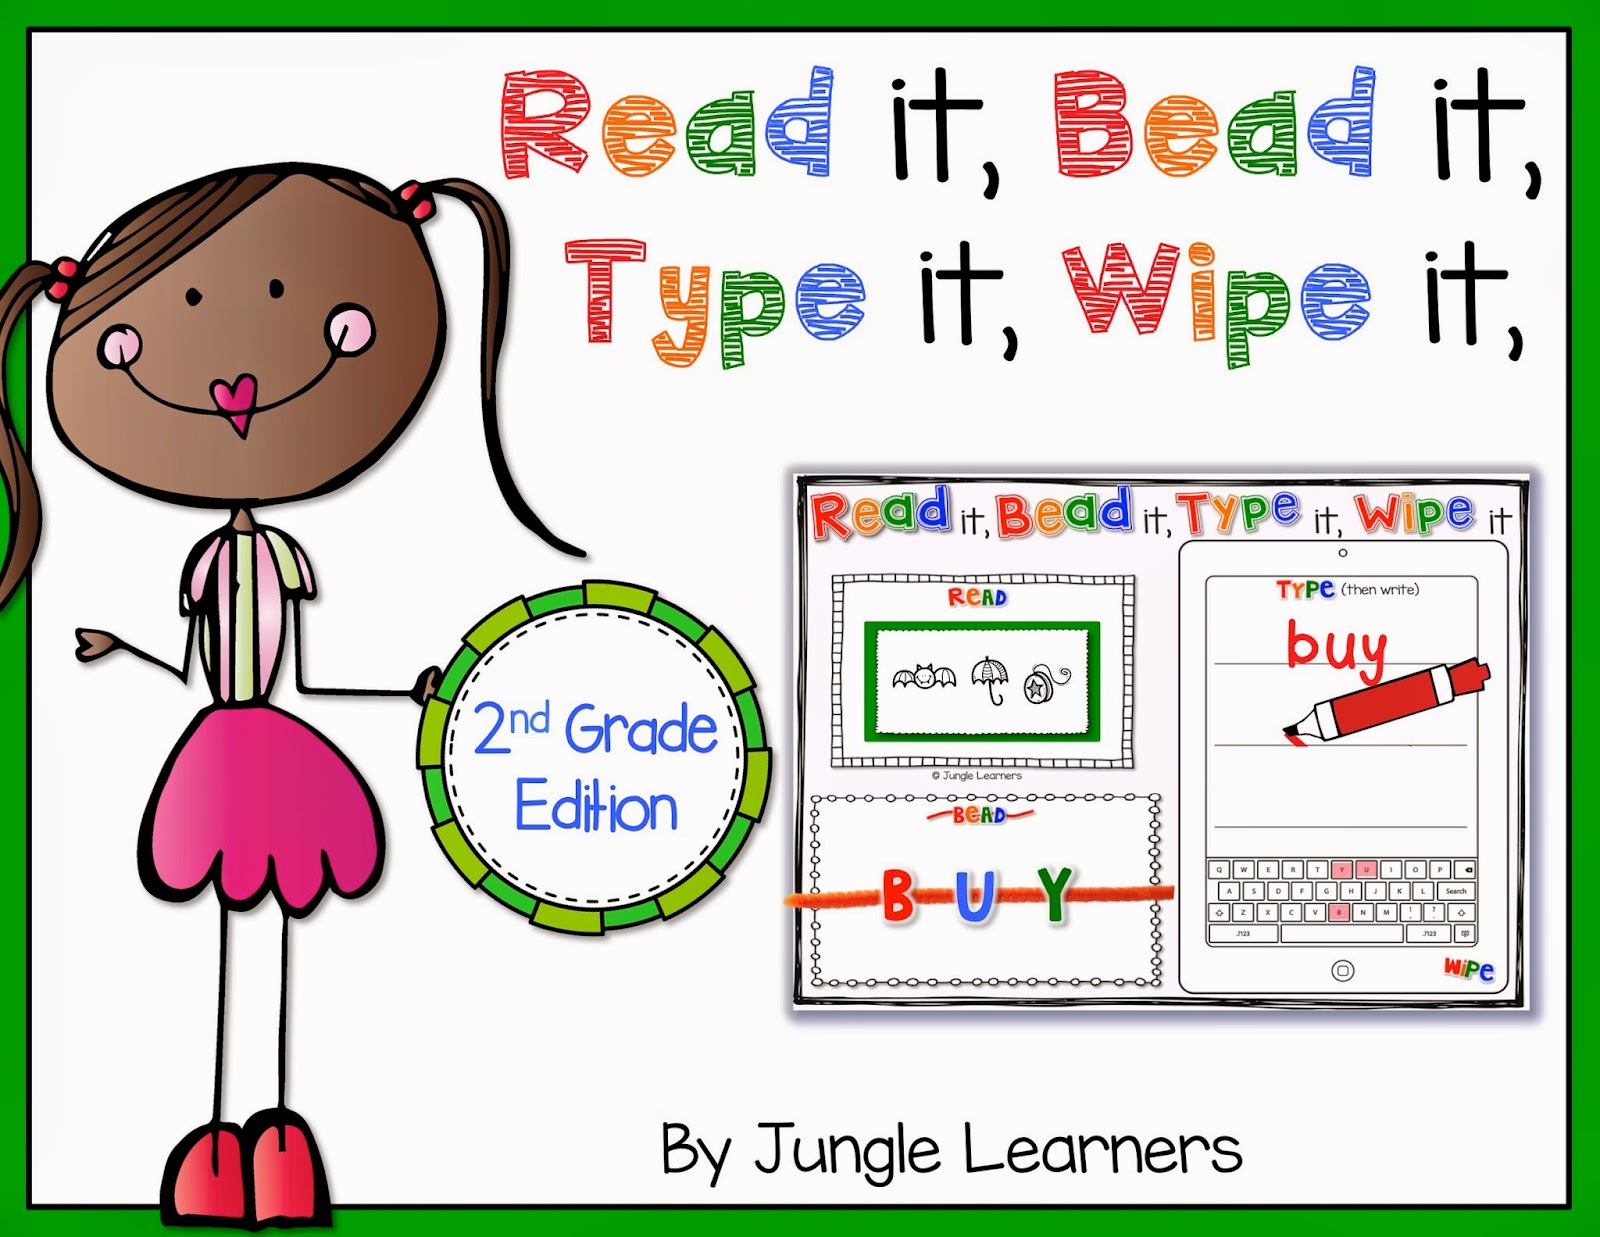 Read it, Bead it, Type it, Wipe it [2nd Grade Edition]